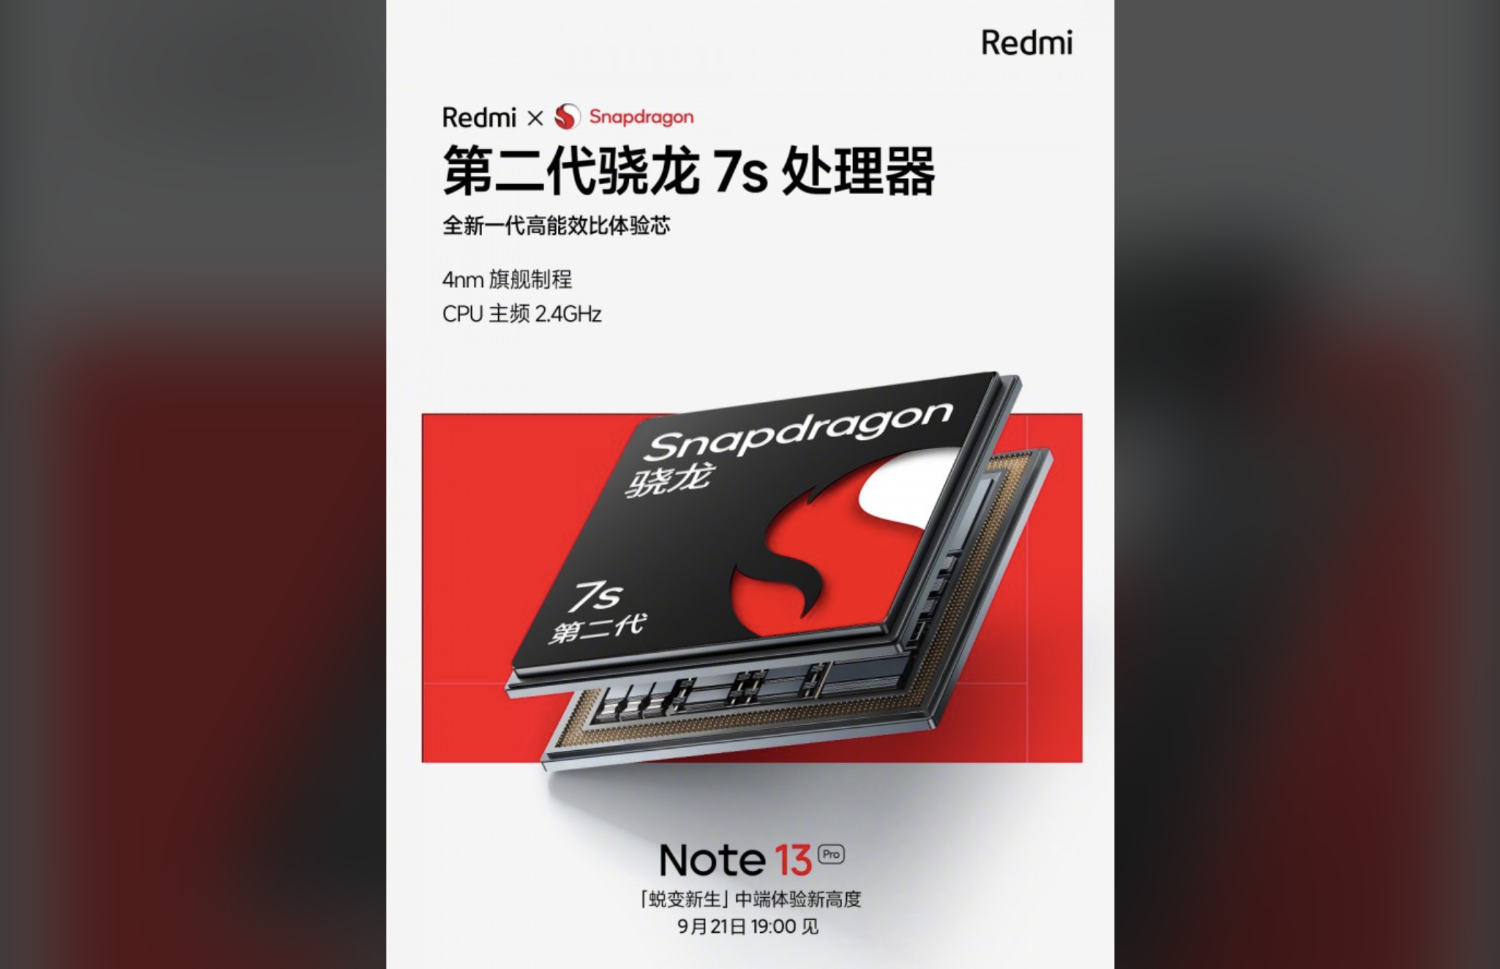 База данных Geekbench раскрыла процессор долгожданного смартфона Xiaomi Redmi Note 13 Pro